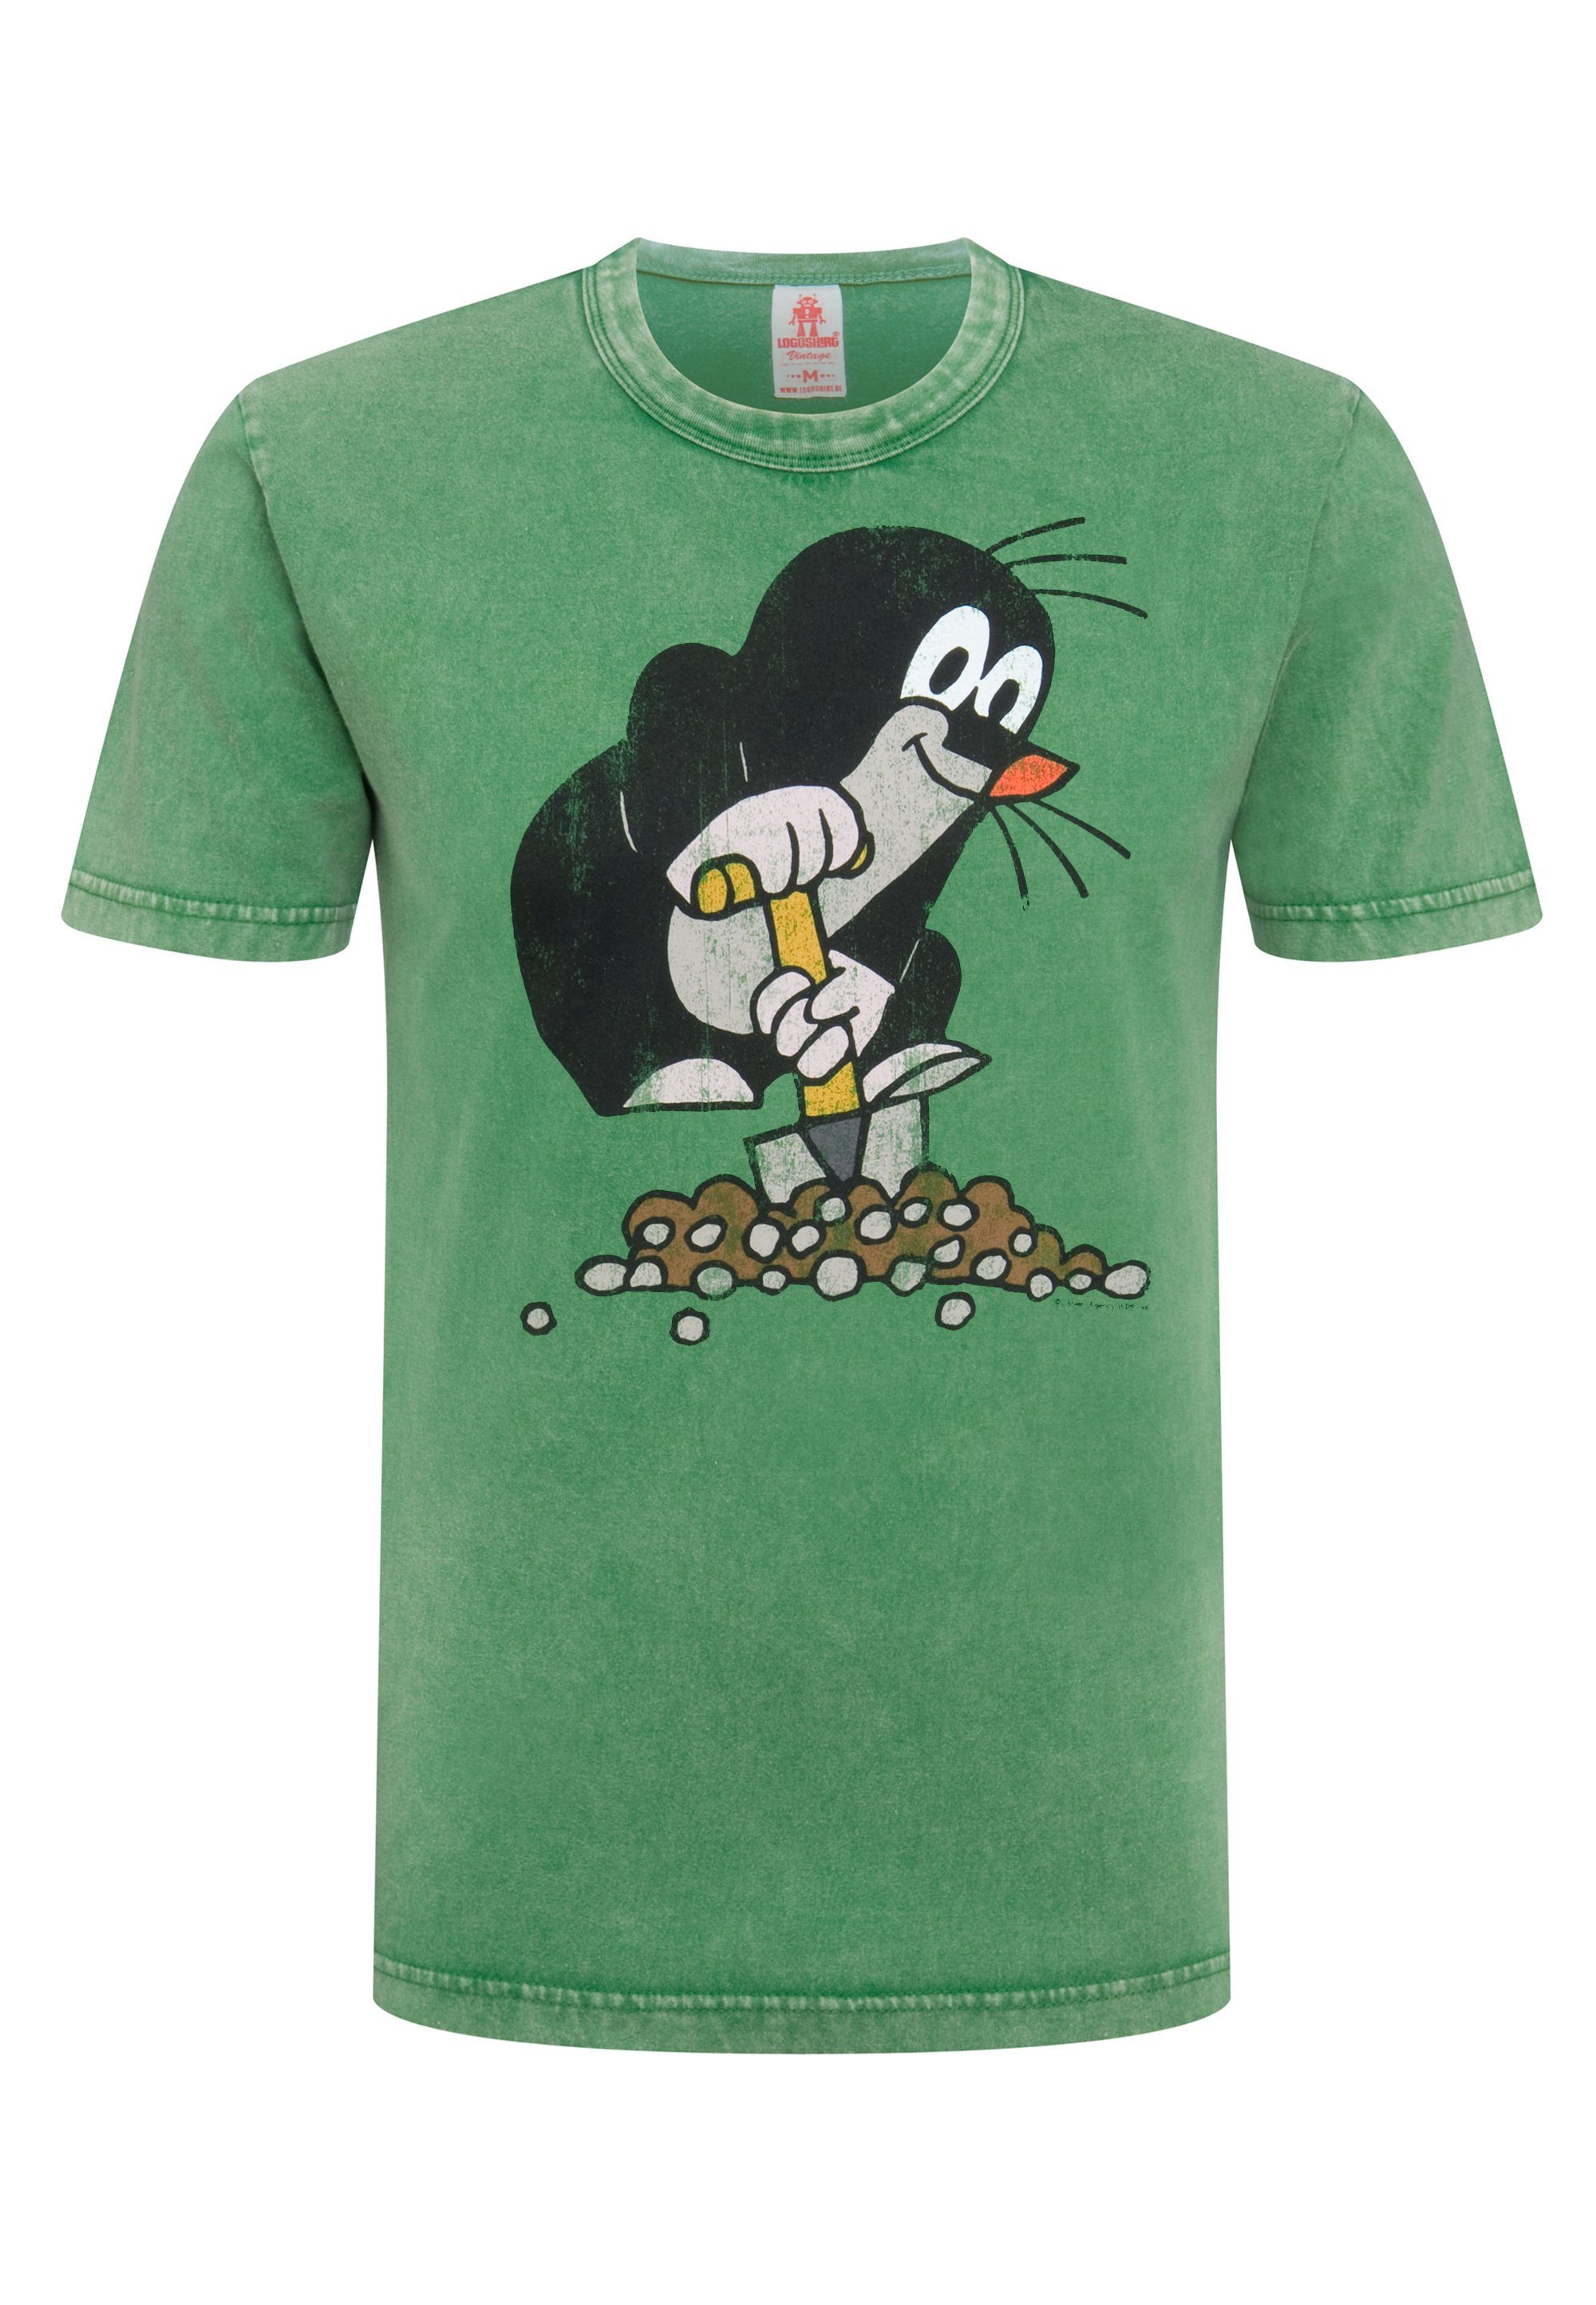 LOGOSHIRT T-Shirt Der kleine lizenziertem grün Print mit Maulwurf